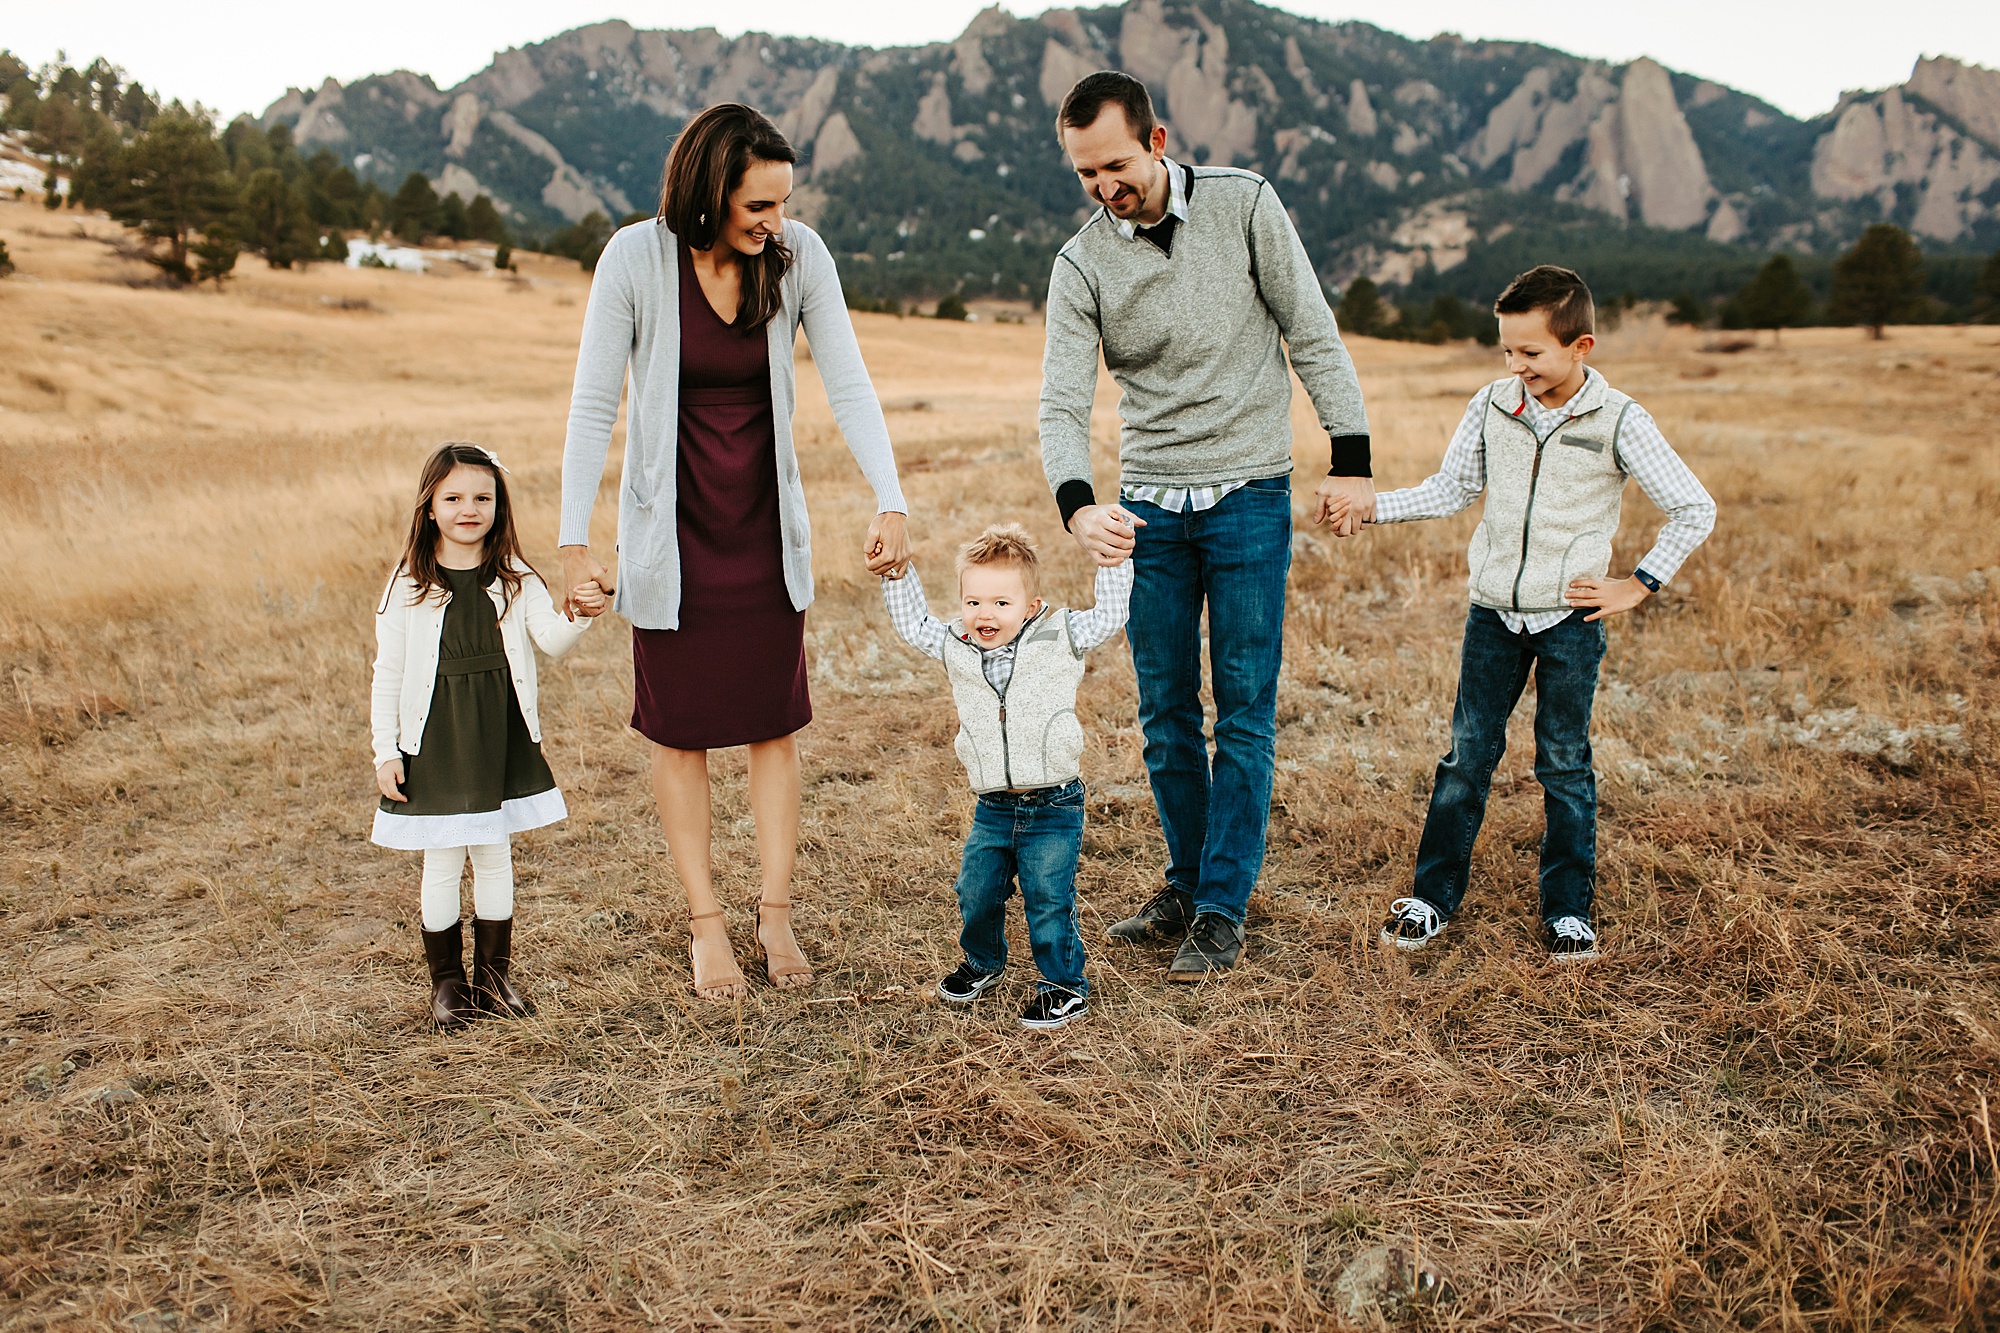 Colorado Family Photographer | www.julielivermorephotography.com